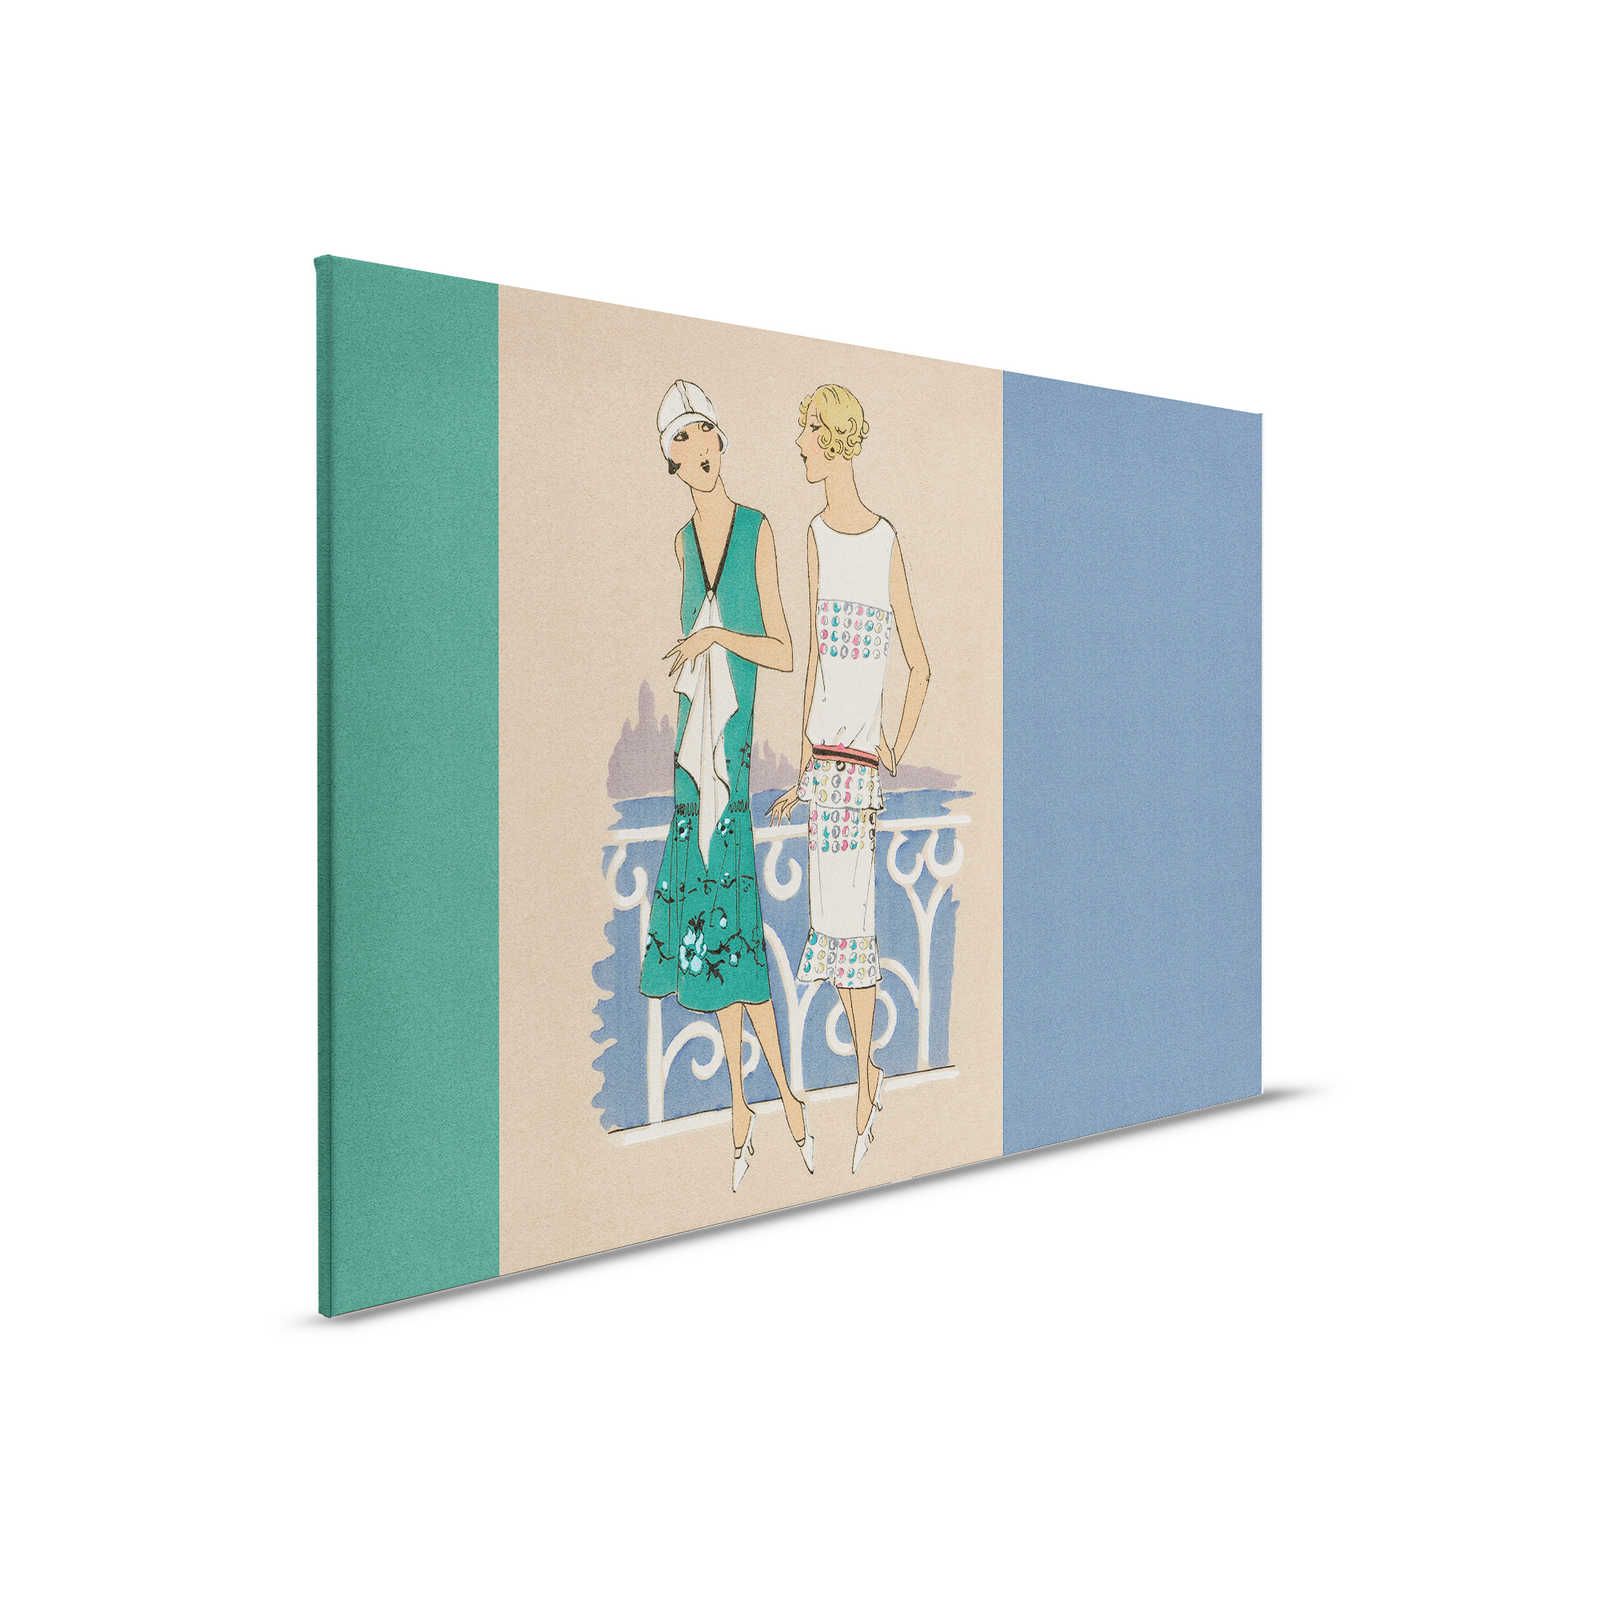 Parisienne 3 - toile rétro mode impression années 20 en bleu & vert - 0,90 m x 0,60 m
